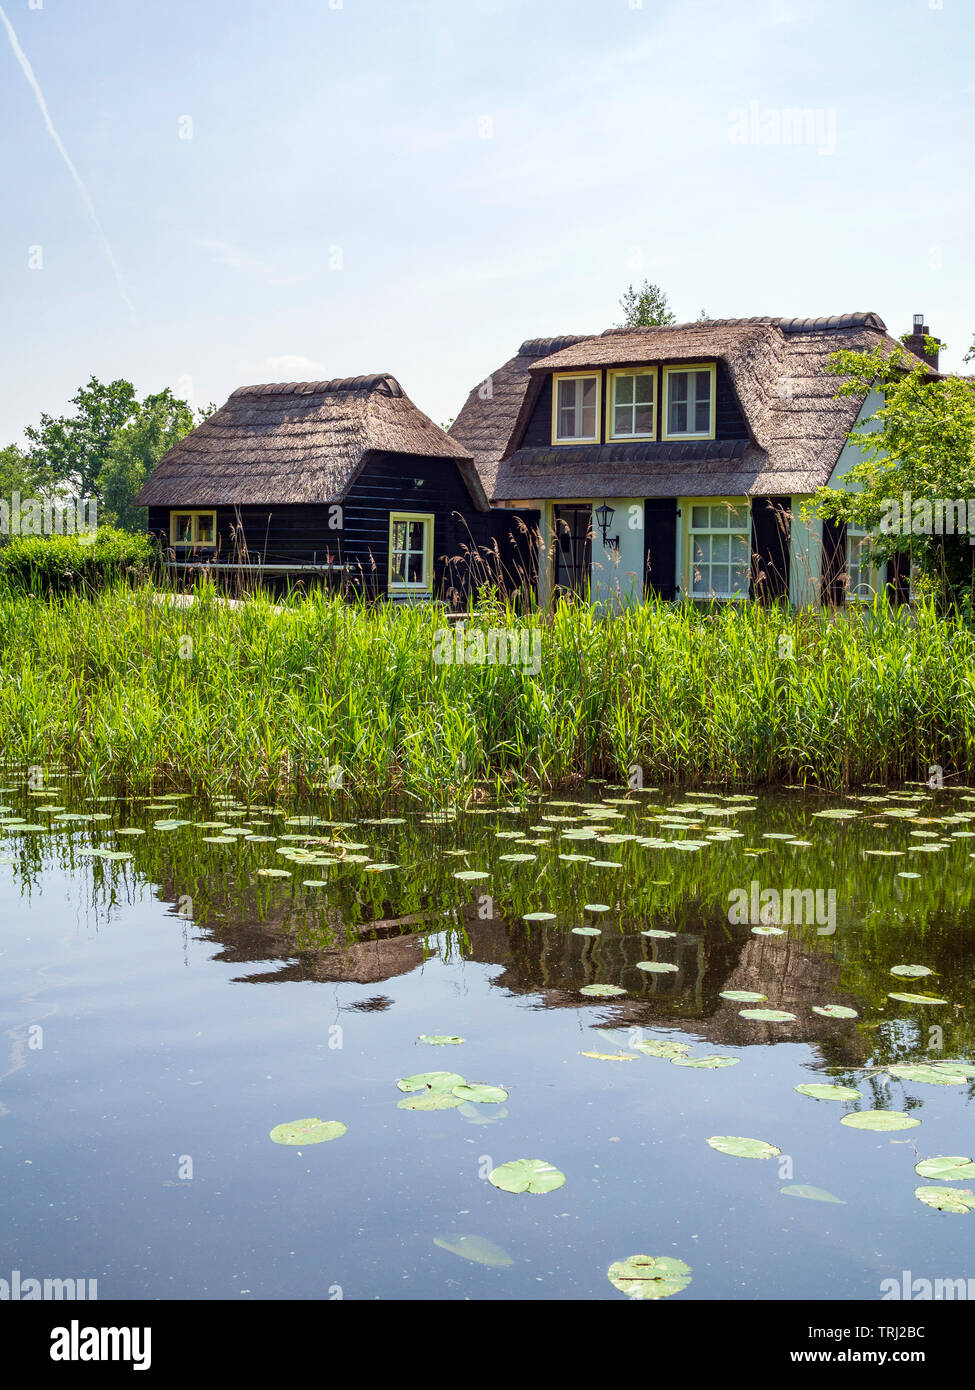 Una casa de estilo tradicional en el lago "Ankeveense Plassen", creado por la turba la cosecha, en Ankeveen, Países Bajos. Foto de stock